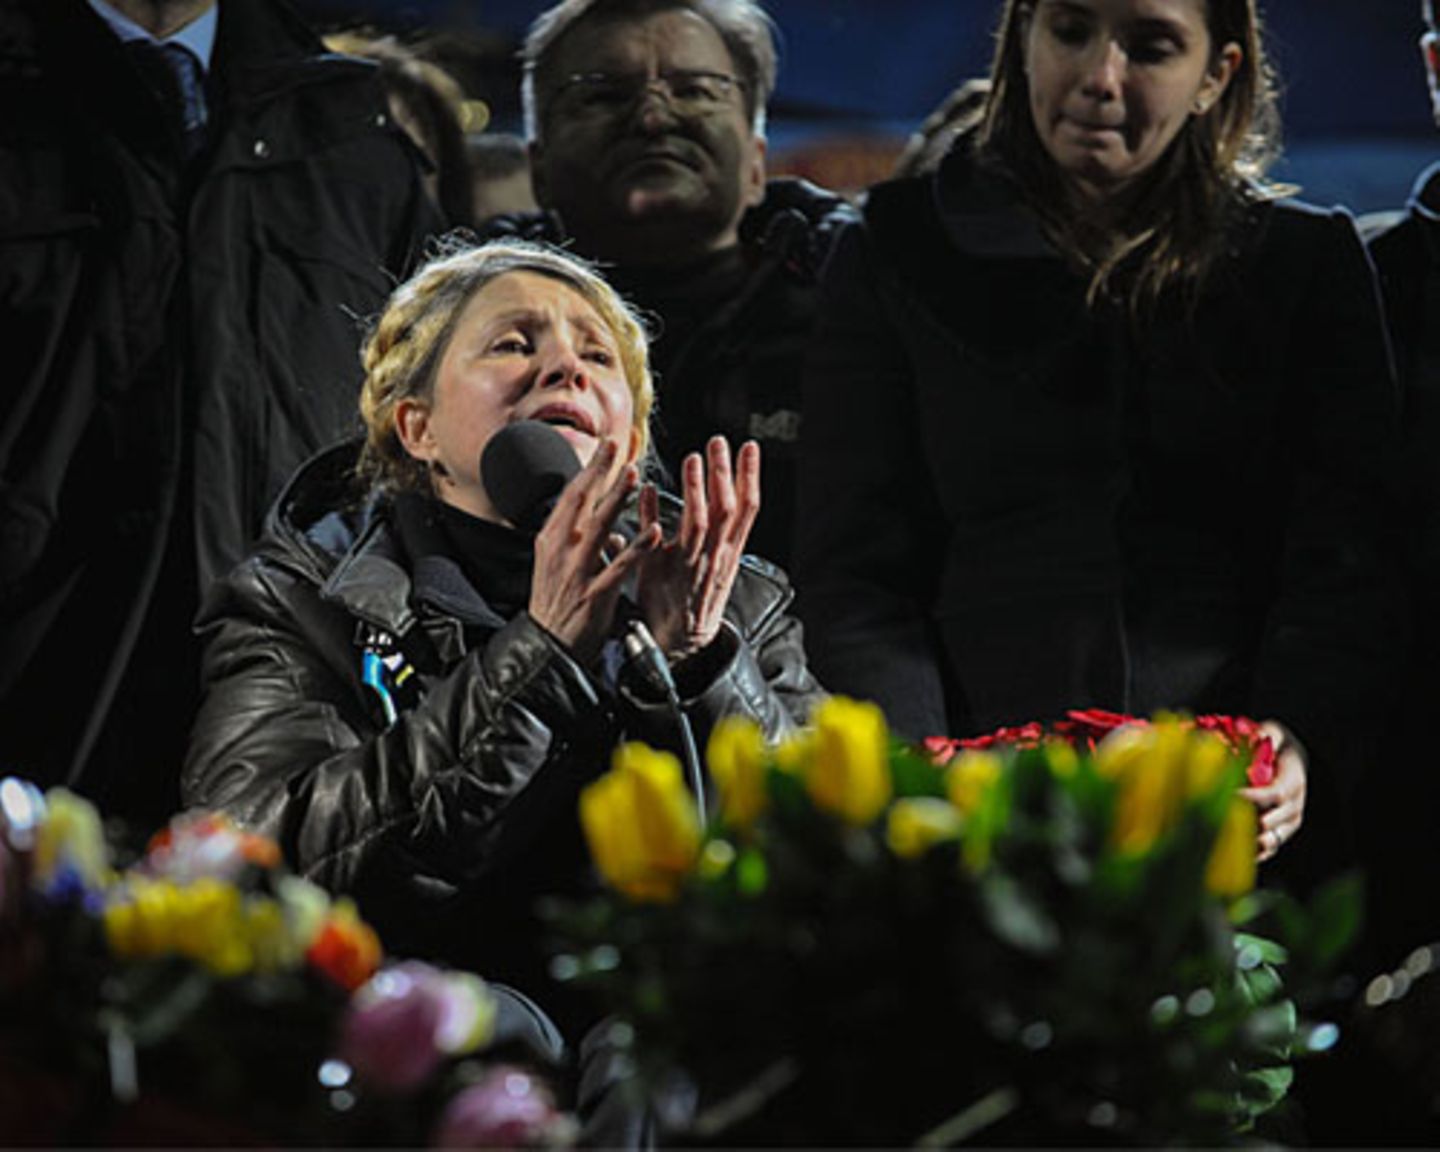 Julija Timoschenko spricht am 22. Februar 2014 auf dem Maidan-Platz in Kiew. Die ehemalige Regierungschefin war von ihrem Nachfolger zu sieben Jahren Haft verurteilt worden. Jetzt ist sie wieder da - und sofort verblassen die anderen Oppositionsführer neben ihr. Noch ist unklar, welche Rolle sie in der neuen Regierung übernehmen will, aber sie platziert ihre Anhänger bereits in Schlüsselpositionen. Dabei ist Julija Timonschenko umstritten, auch im eigenen Land. Ein Rückblick auf ihre Karriere.